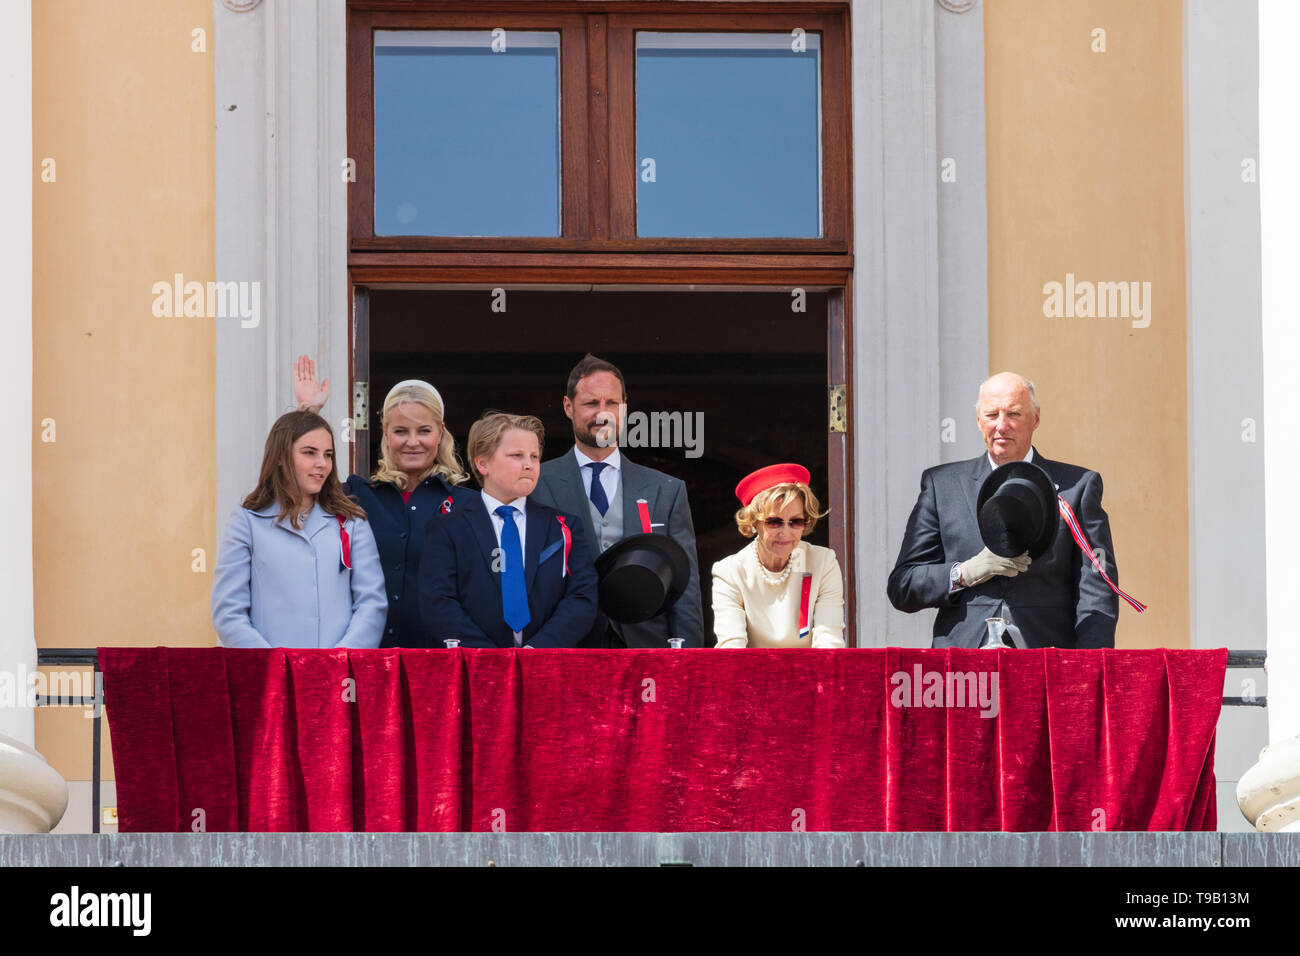 Noruega, Oslo - Mayo 17, 2019. El pueblo es saludado por la familia real que están agitando a la muchedumbre desde el balcón del Palacio Real durante el día de la Constitución noruega, también conocido como Sytttende Mai, en el centro de Oslo. (L-R) La Princesa Ingrid Alexandra, la princesa heredera Mette-Marit de Noruega, el Príncipe Sverre Magnus de Noruega, Haakon, Príncipe Heredero de Noruega, la Reina Sonja de Noruega y el Rey Harald V. (Crédito de la foto: Gonzalez Foto: Stian S. Moller). Foto de stock